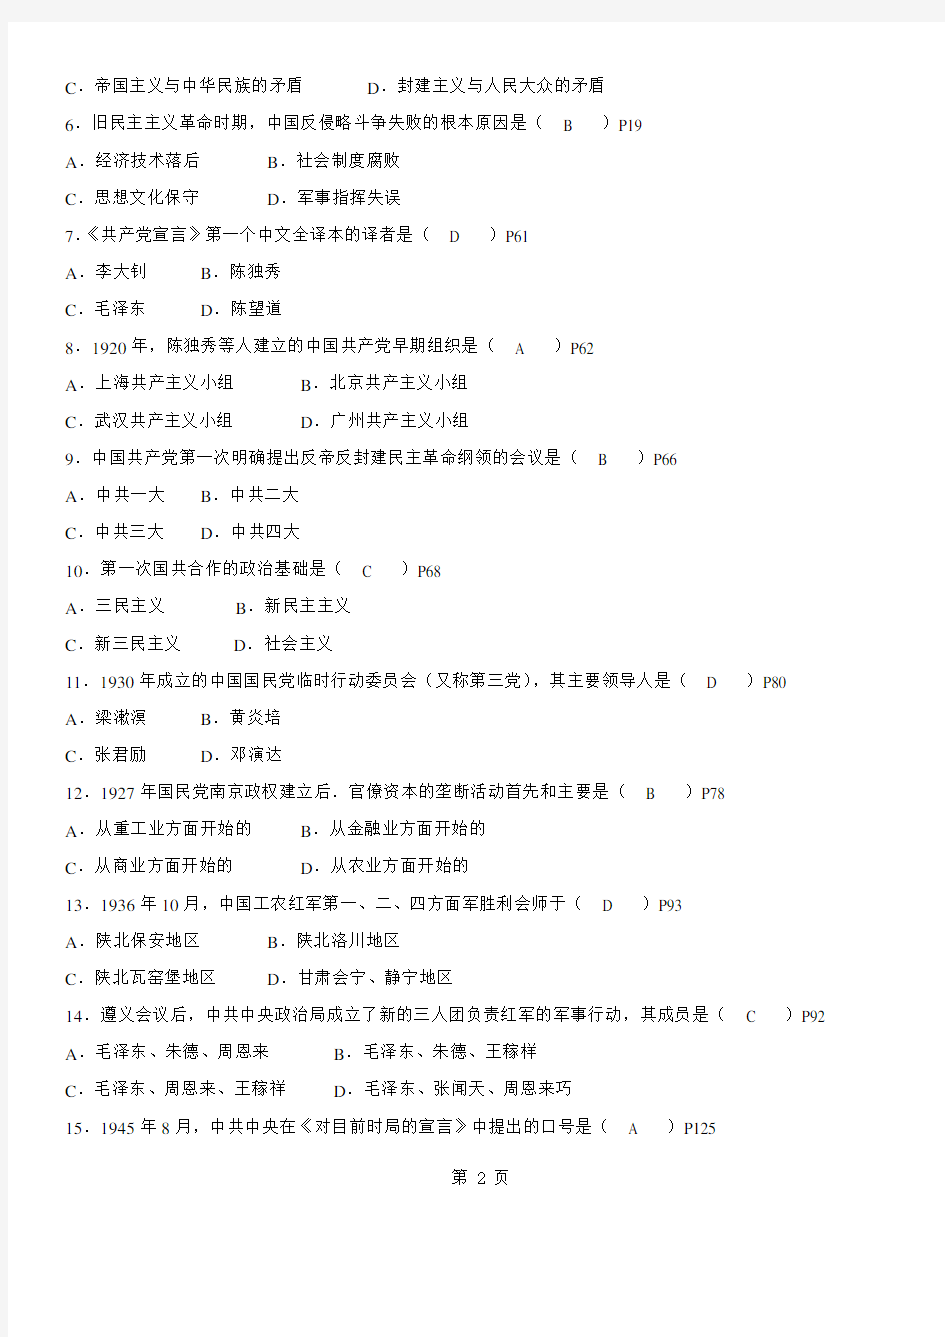 答案版2014年10月自学考试03708《中国近现代史纲要》历年真题及答案